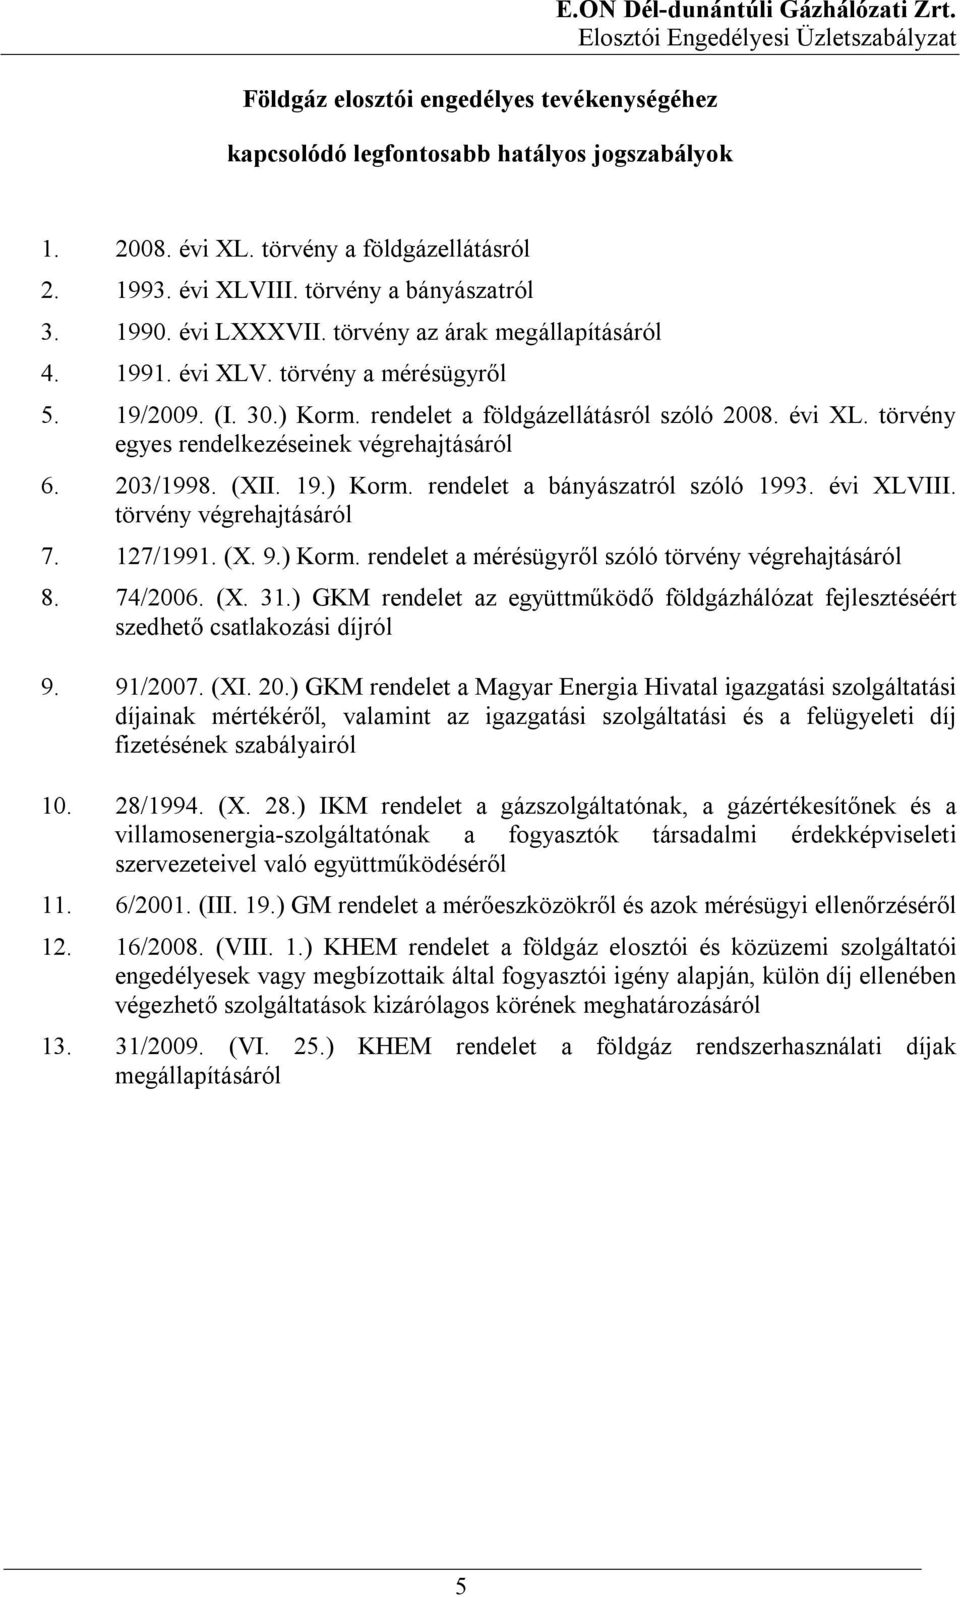 203/1998. (XII. 19.) Korm. rendelet a bányászatról szóló 1993. évi XLVIII. törvény végrehajtásáról 7. 127/1991. (X. 9.) Korm. rendelet a mérésügyről szóló törvény végrehajtásáról 8. 74/2006. (X. 31.